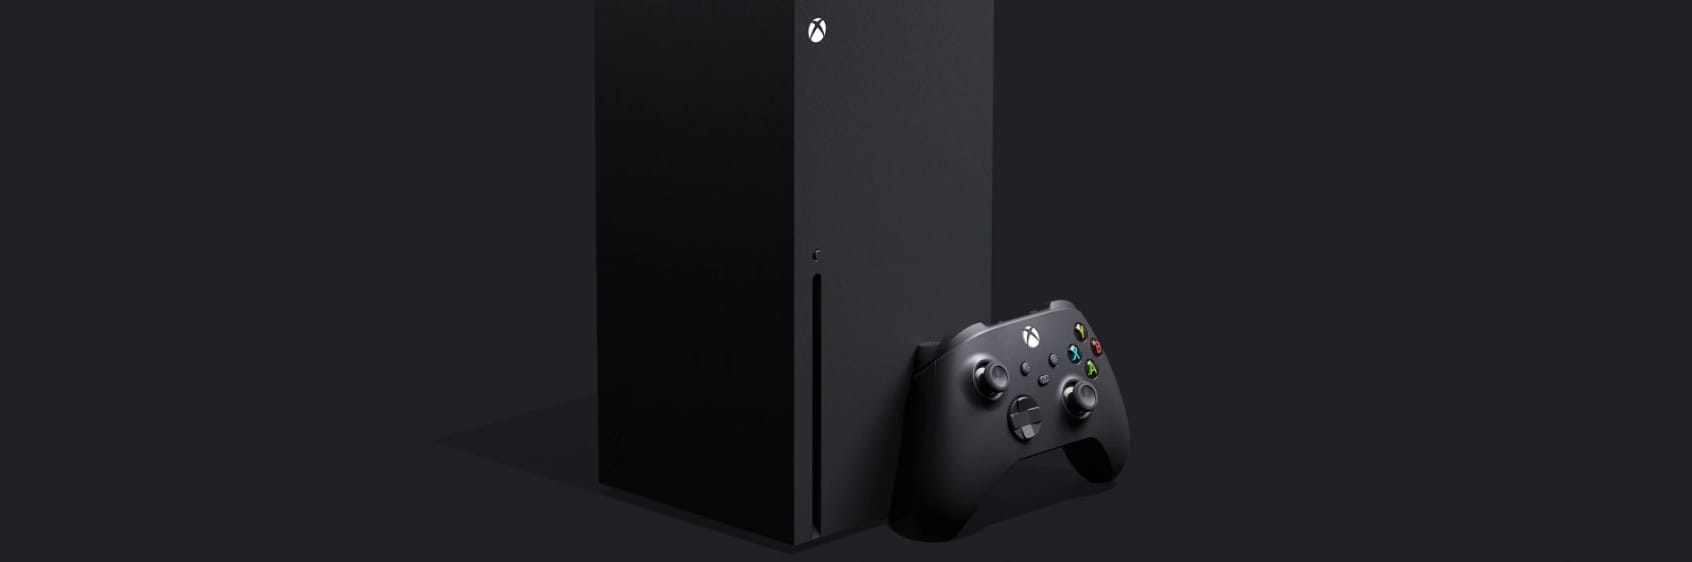 منصة Xbox Series X تدعم DirectX 12_2